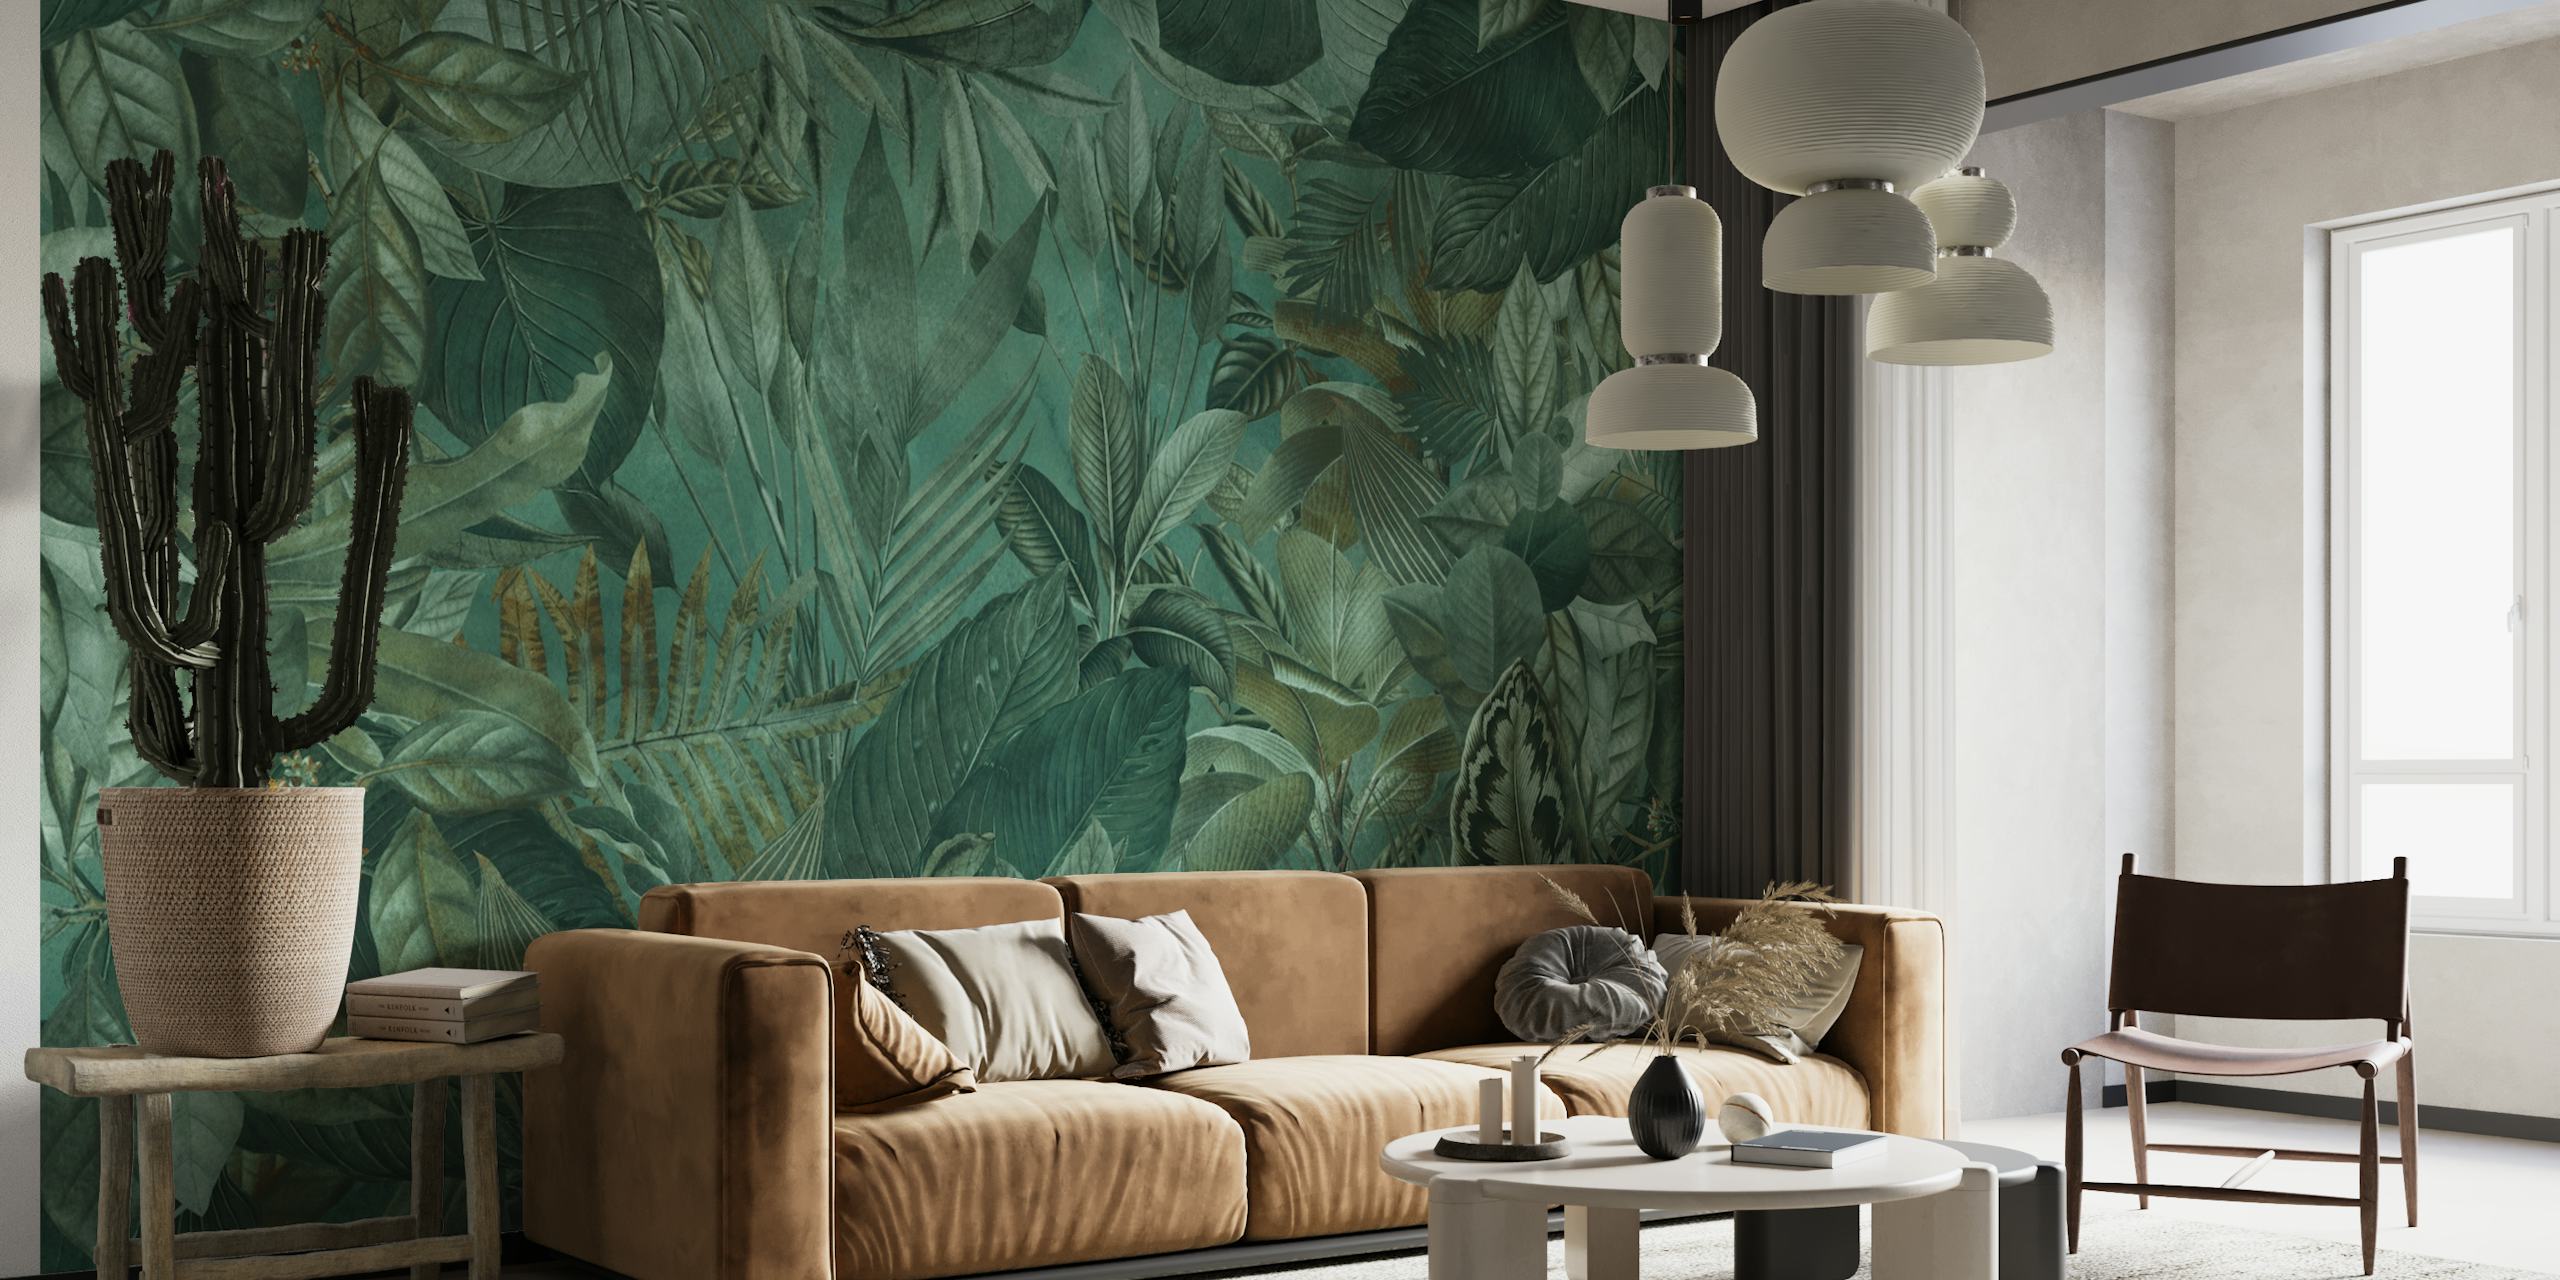 Papier peint mural sur le thème de la jungle tropicale vert émeraude avec un feuillage dense et des motifs floraux